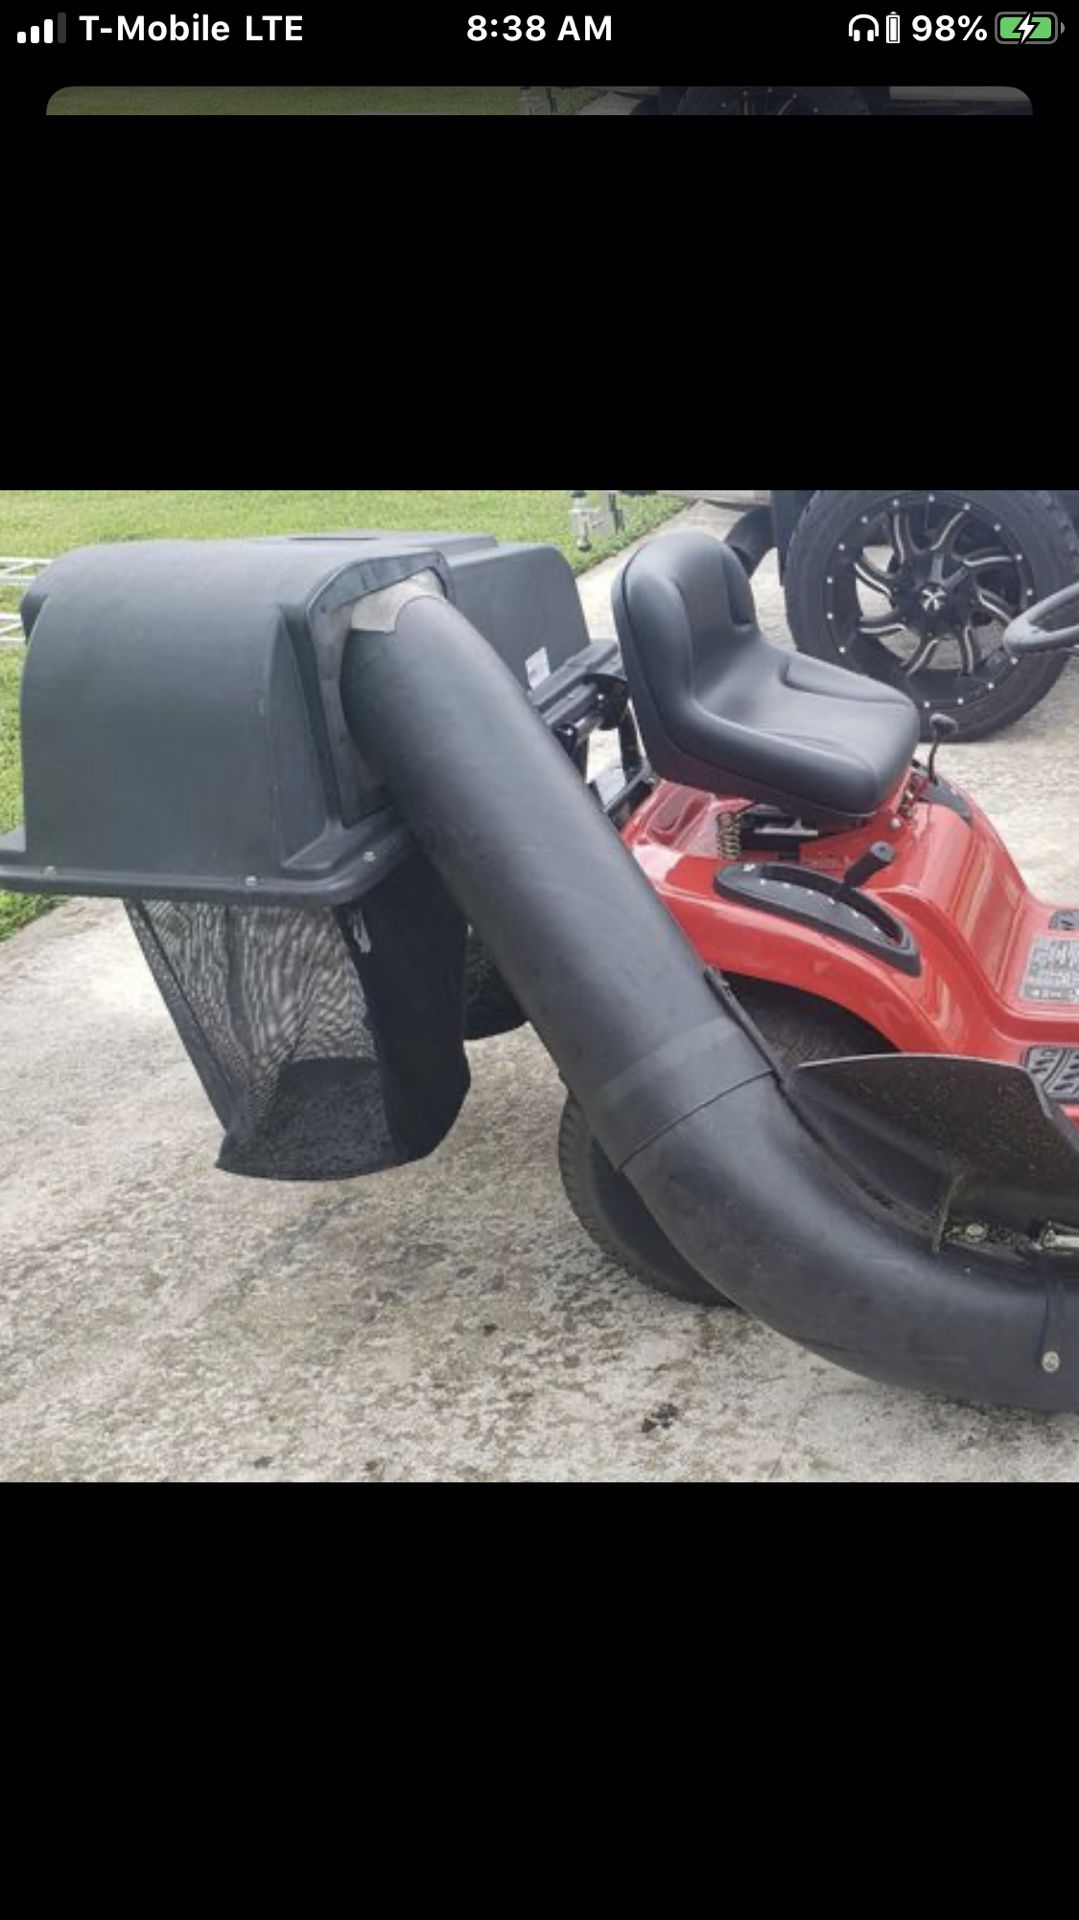 GRASS CATCHER for 46” riding lawn mower/Not Mower